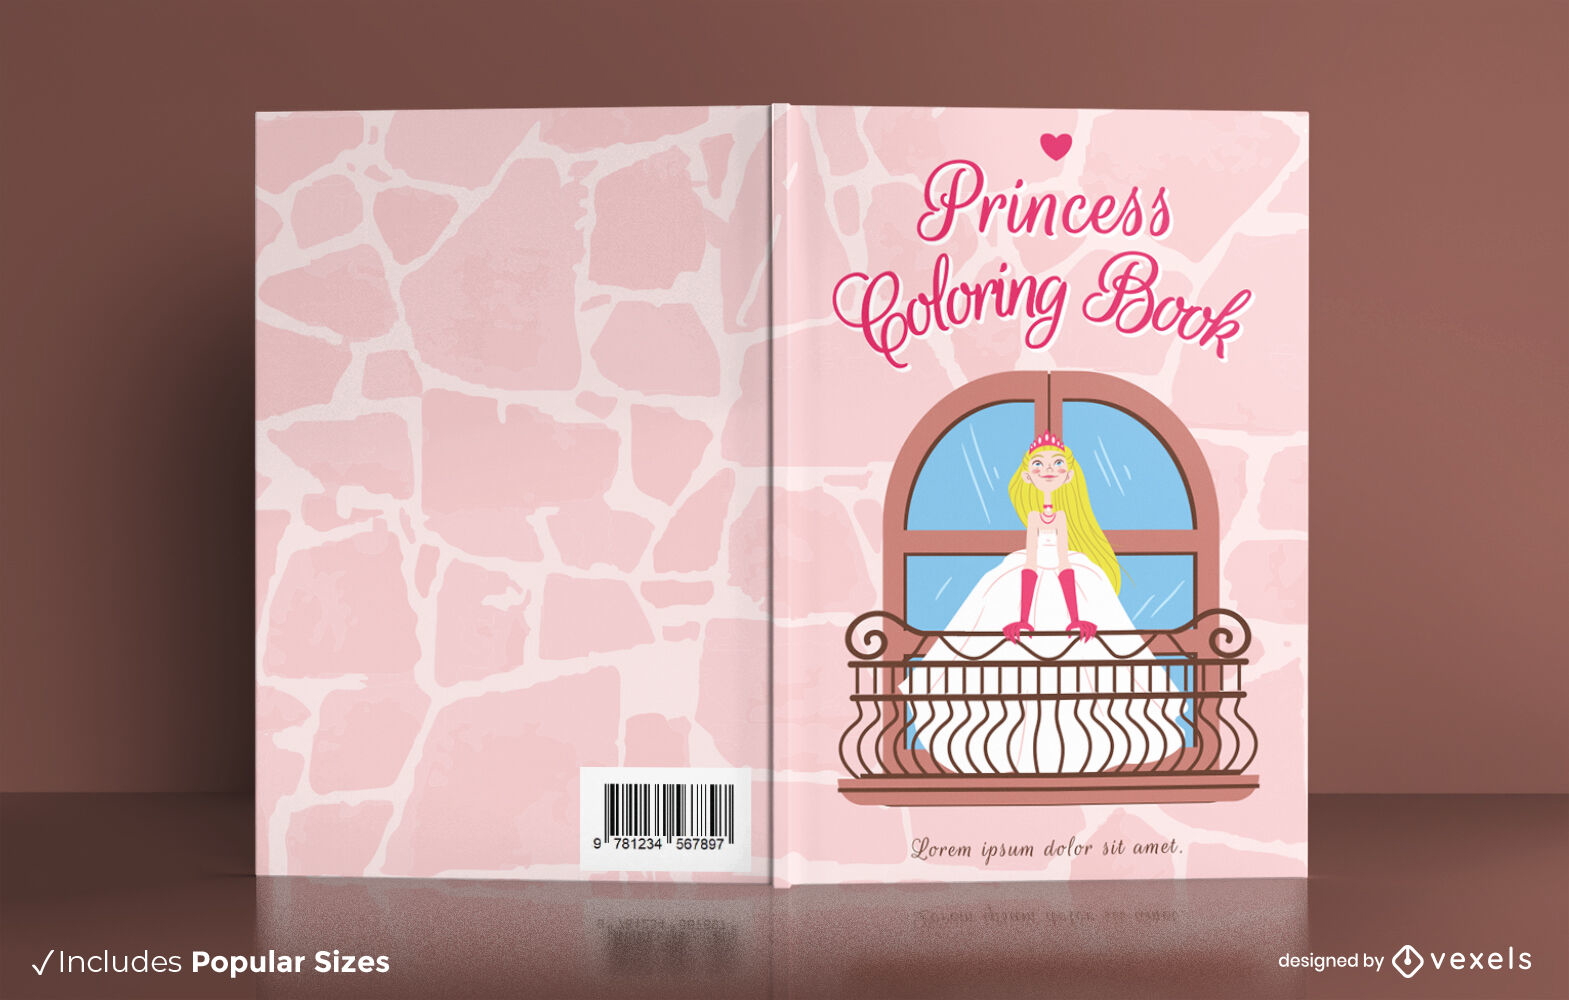 Princesa feliz no design da capa do livro do castelo